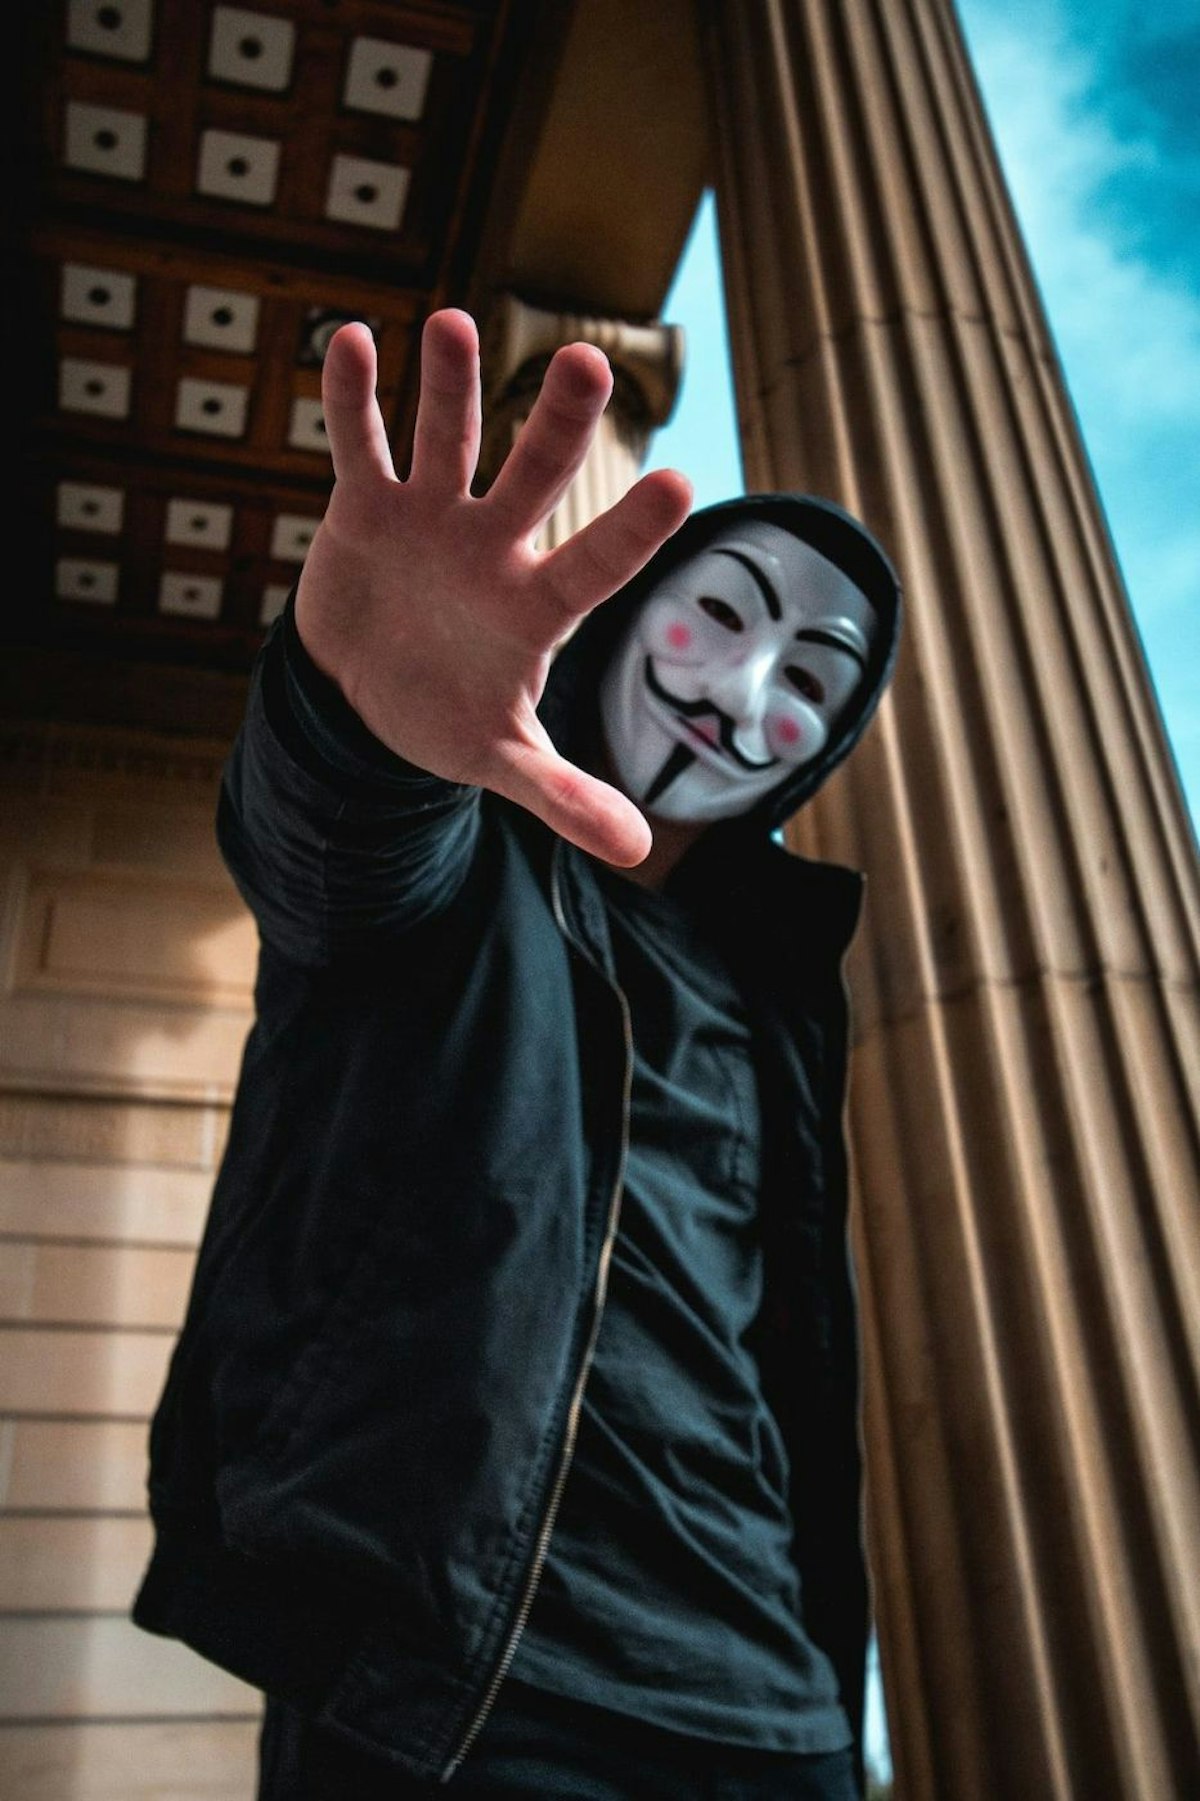 featured image - "Hackers for Hire" est une industrie en plein essor qui exige des considérations éthiques